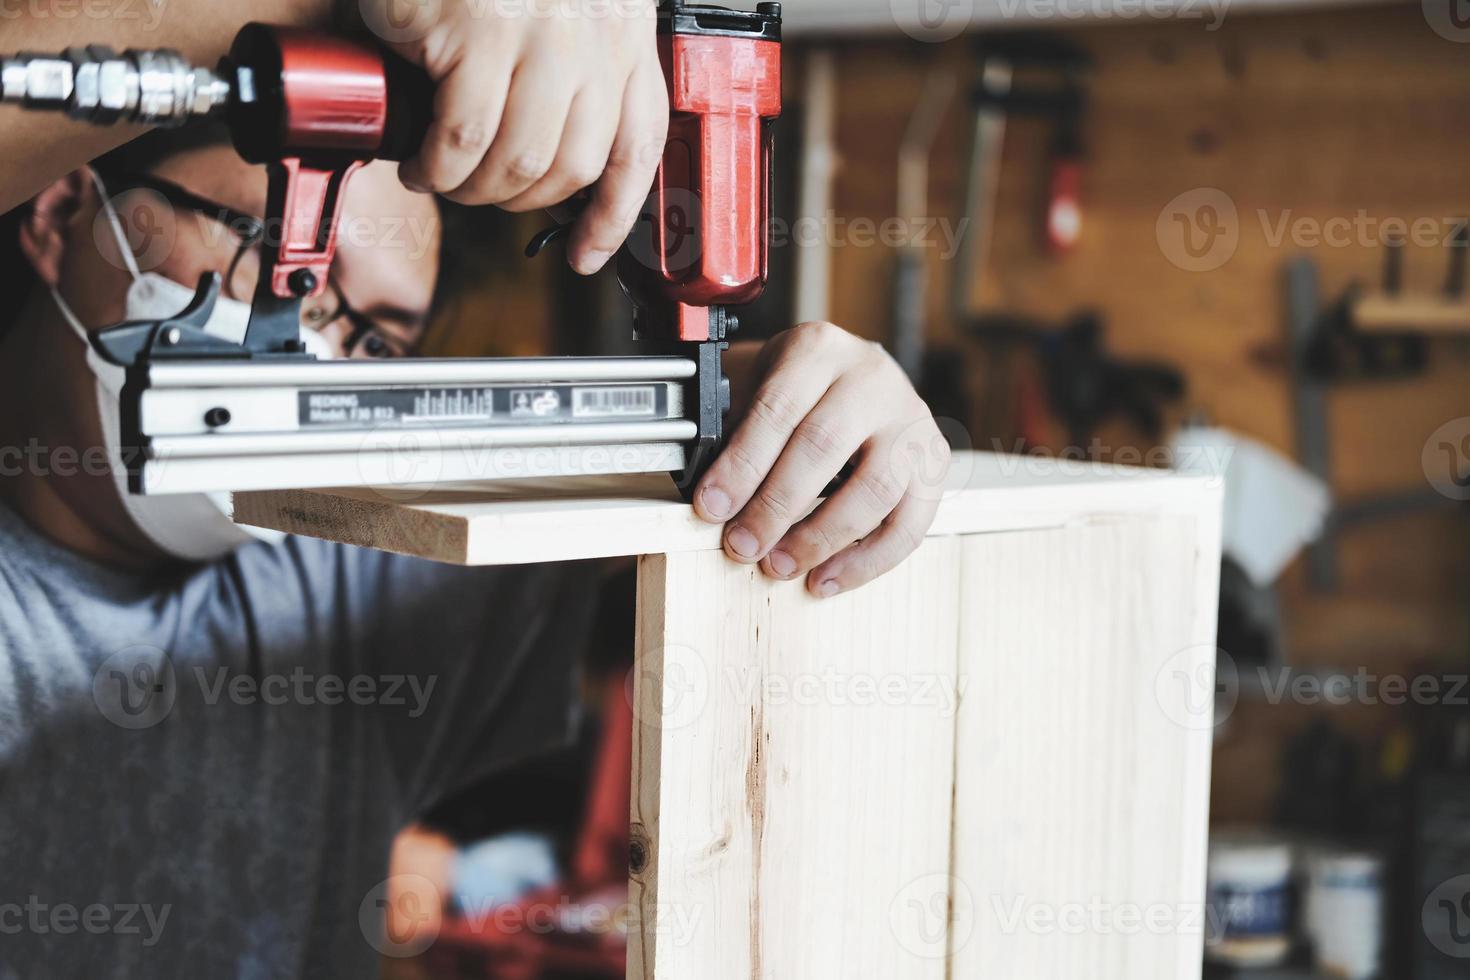 ondernemer houtwerk met een tacker om de stukken hout te monteren zoals de klant besteld. foto